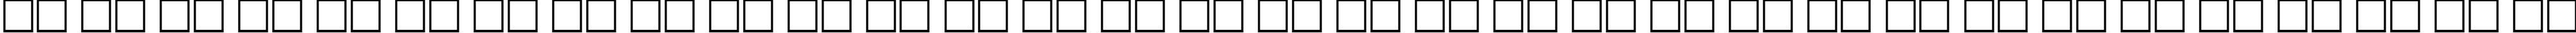 Пример написания русского алфавита шрифтом FreeSet70H